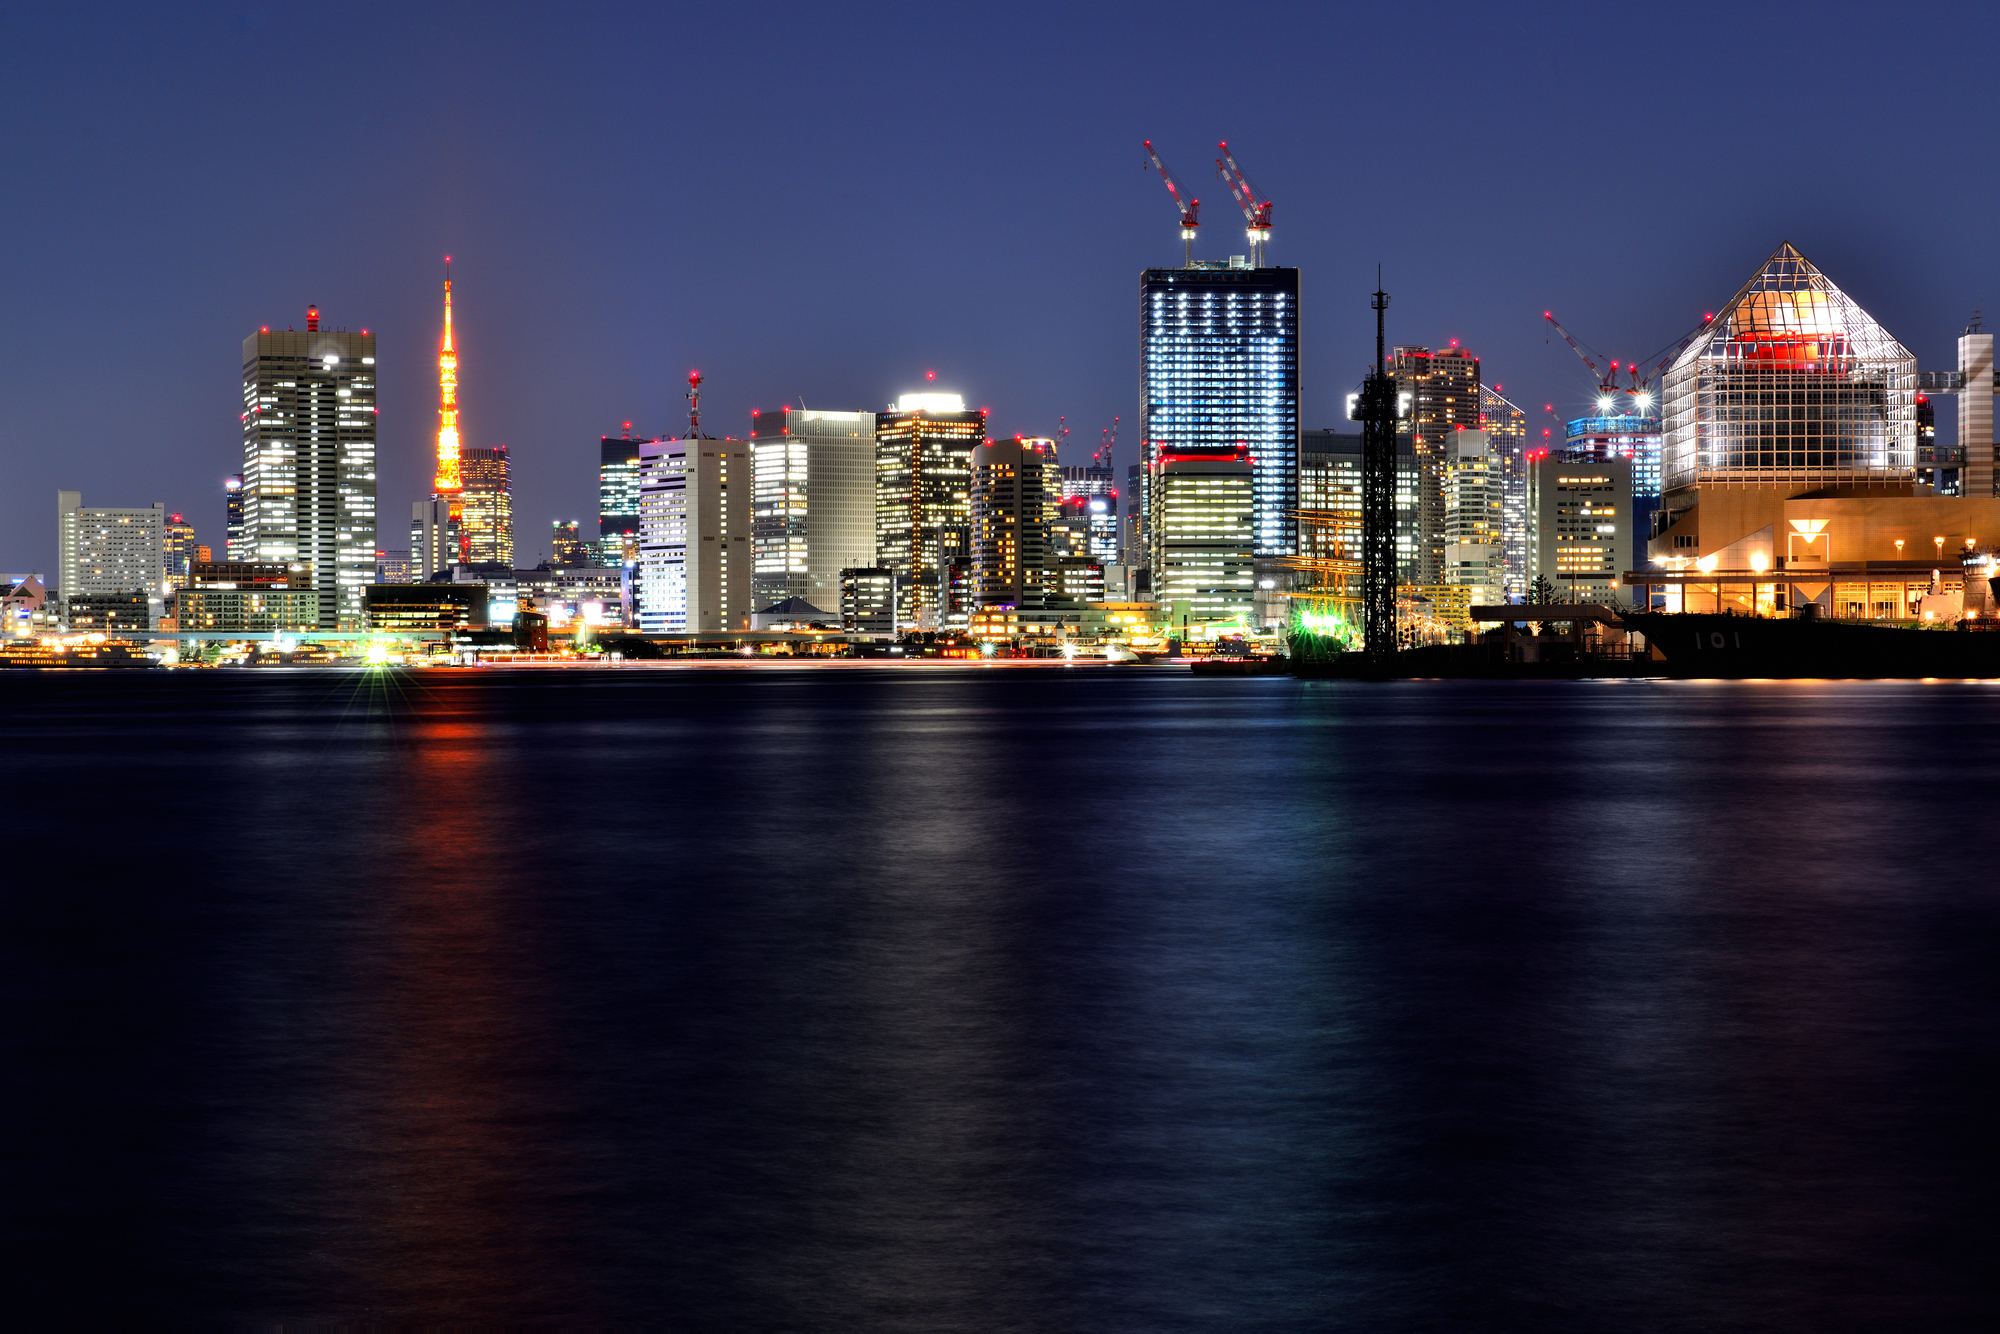 東京タワーやビル群の美しい夜景